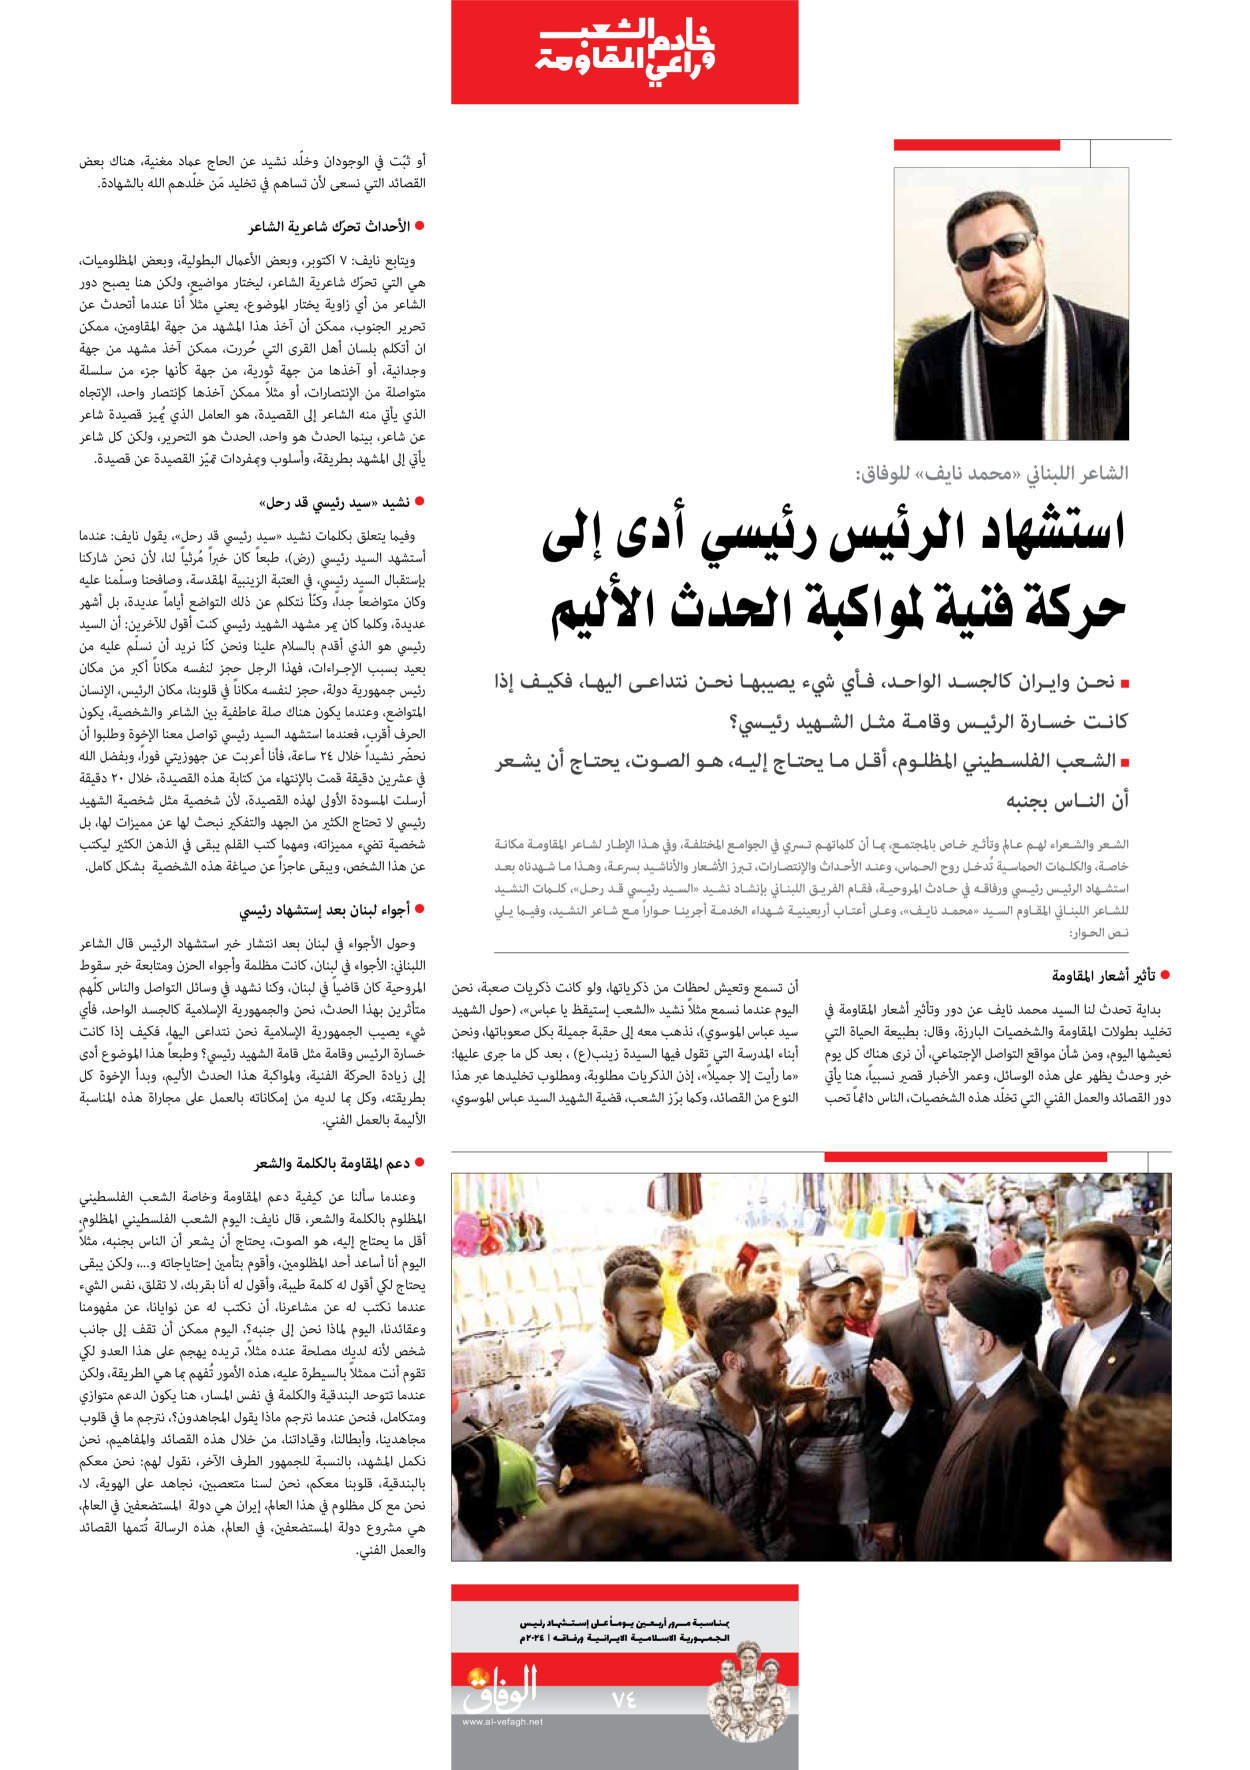 صحیفة ایران الدولیة الوفاق - ملحق ویژه نامه چهلم شهید رییسی - ٢٩ يونيو ٢٠٢٤ - الصفحة ۷٤